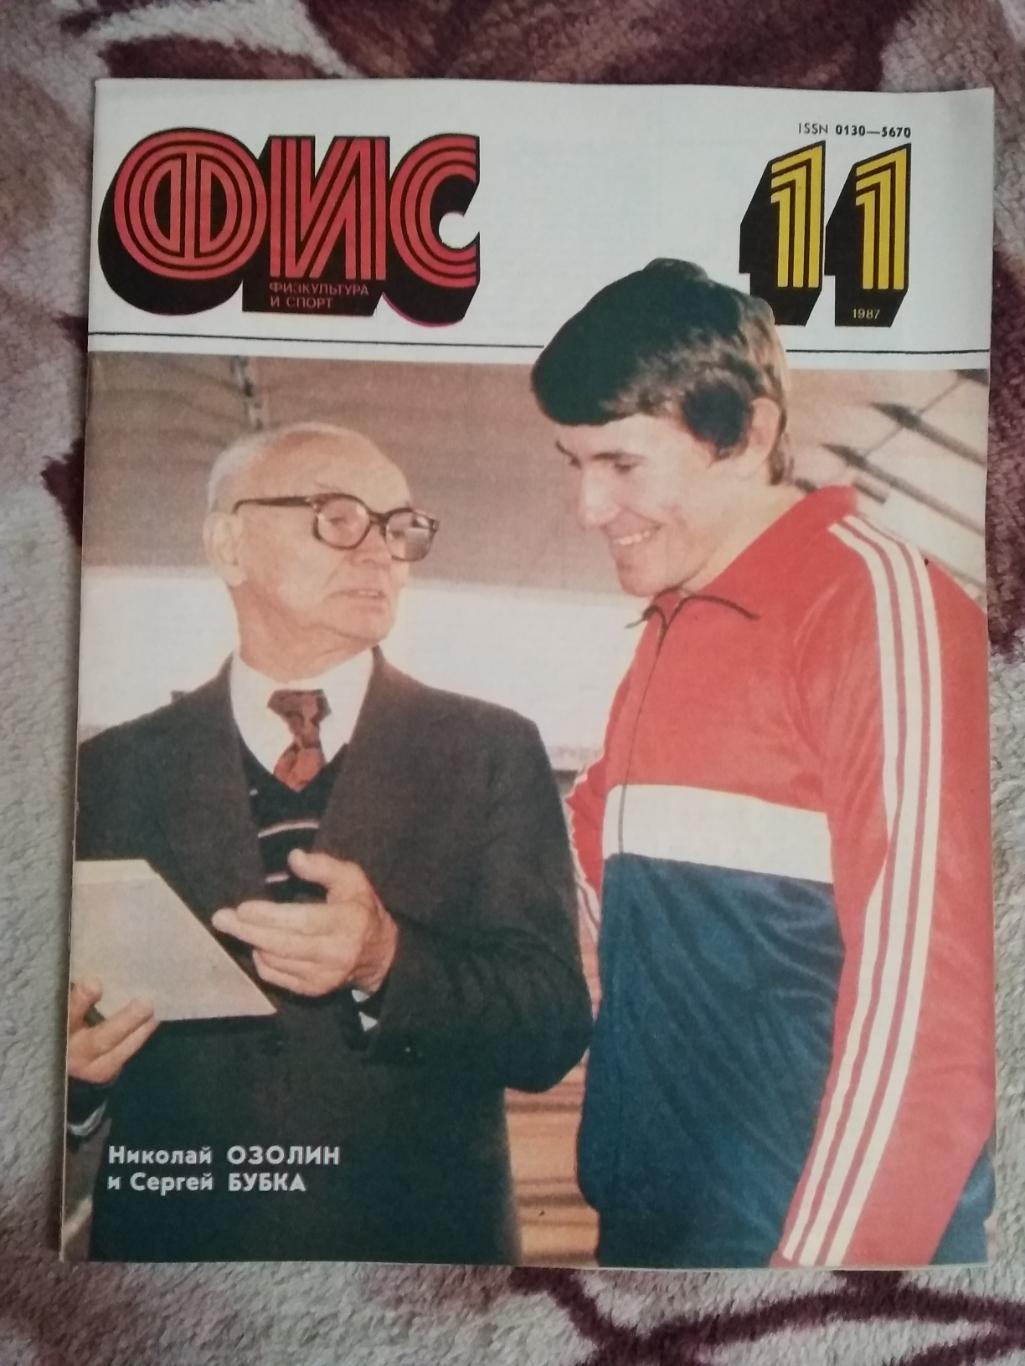 Журнал.Физкультура и спорт № 11 1987 г. (ФиС).